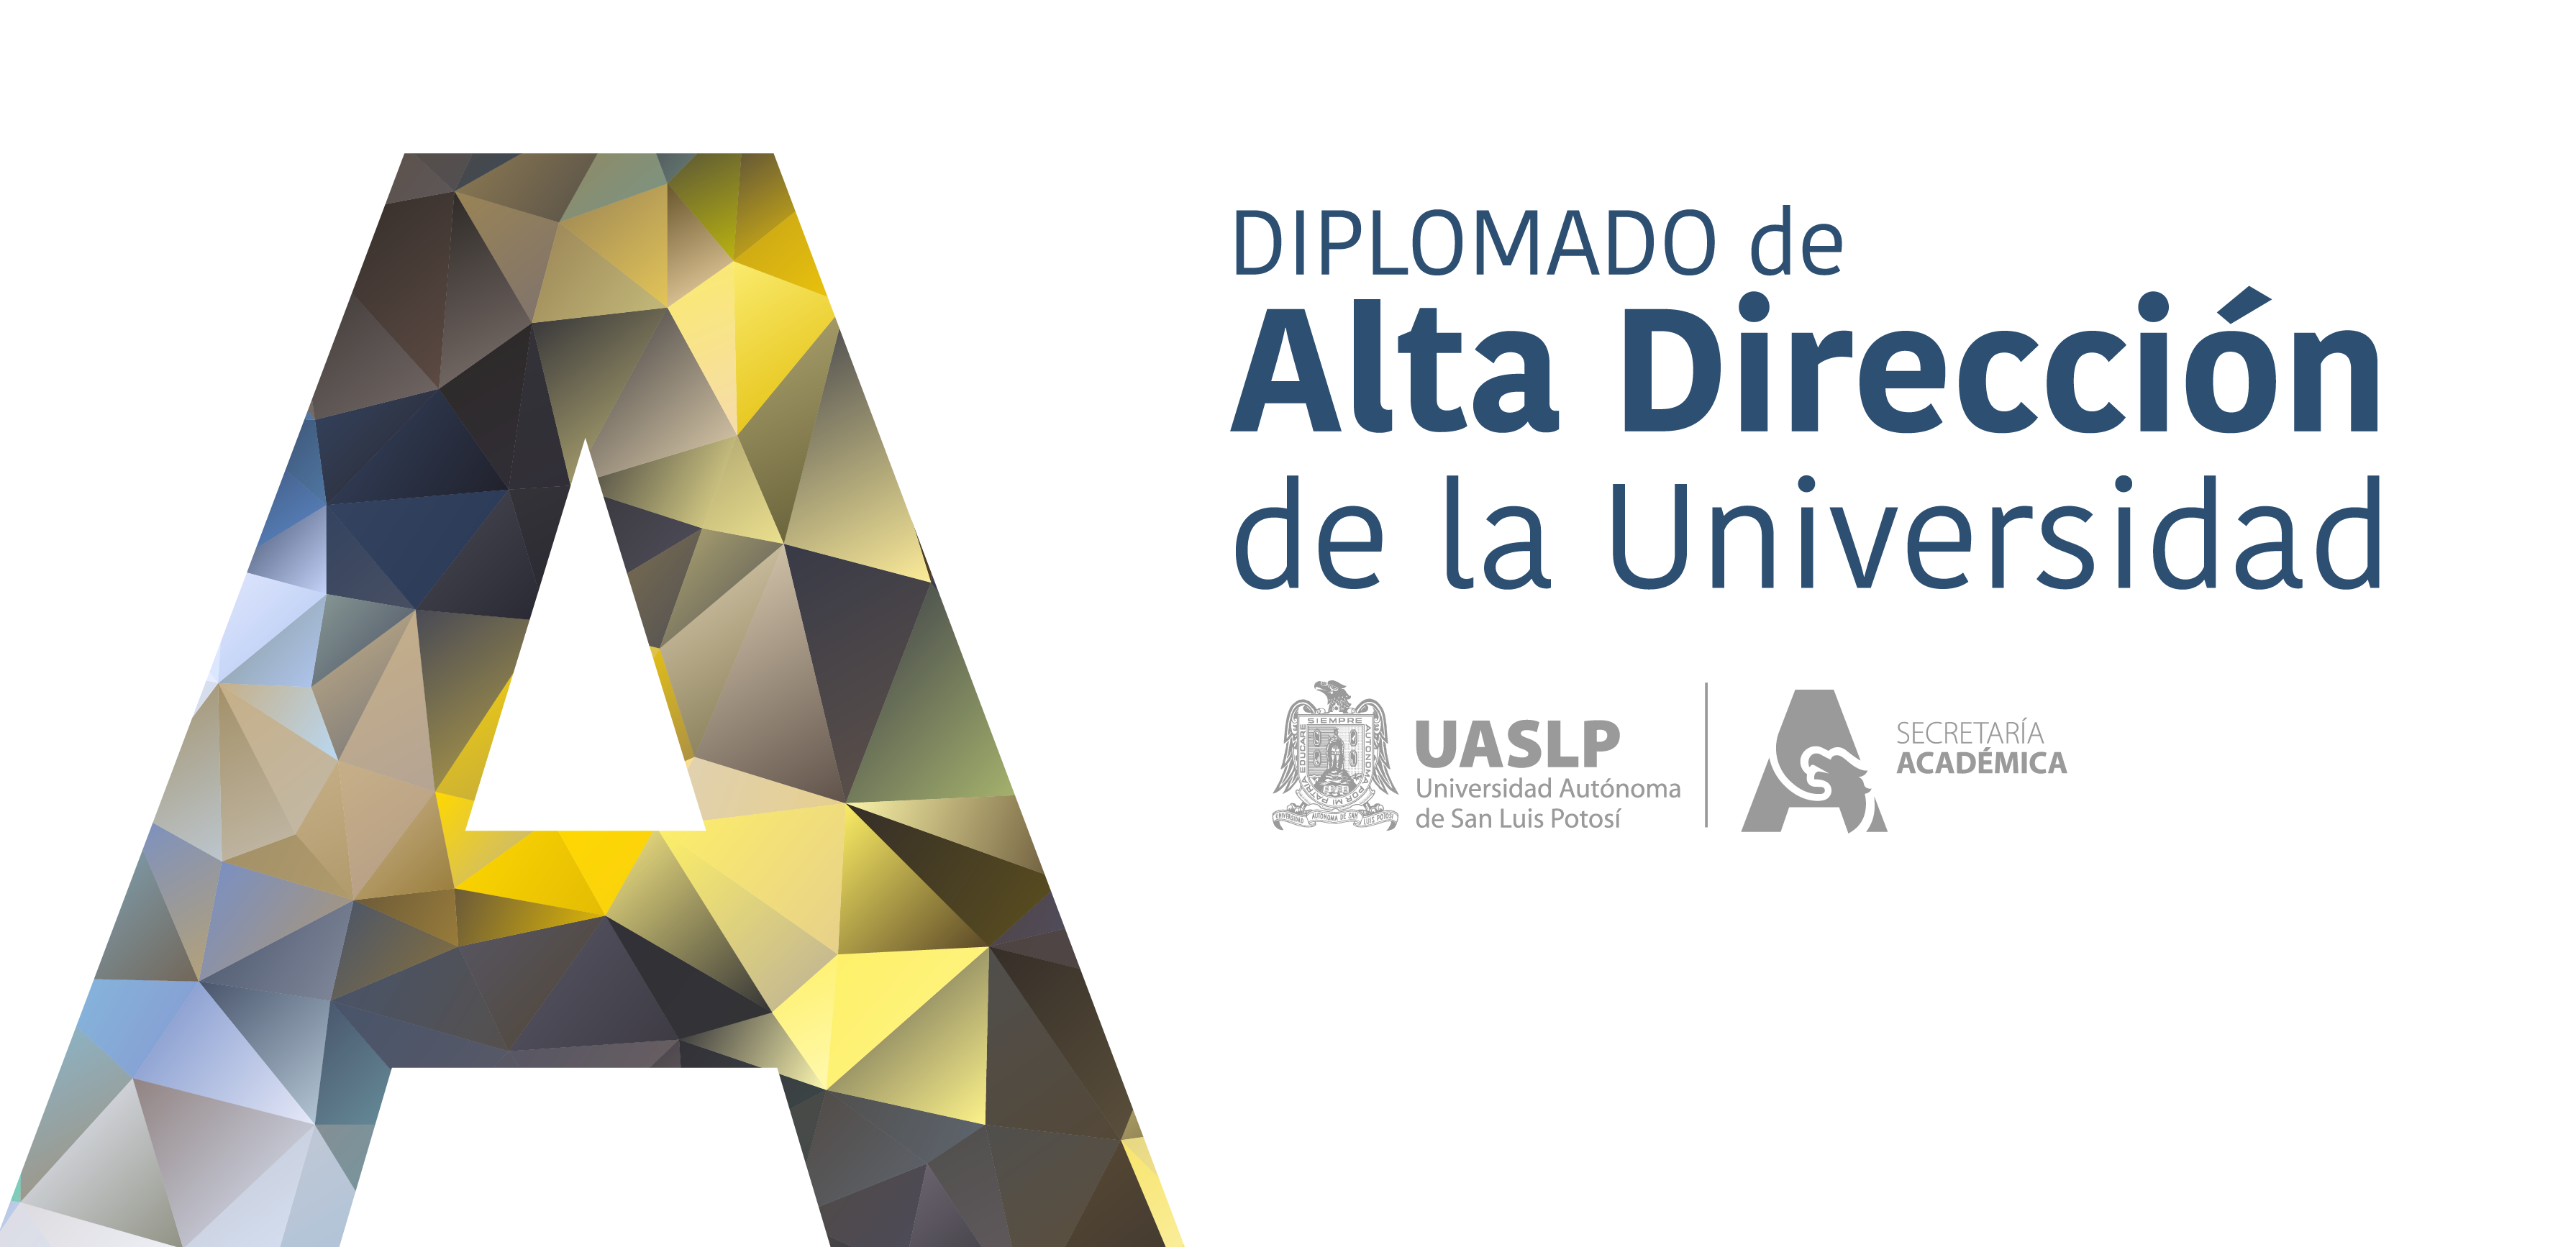 Diplomado de Alta Dirección de la Universidad. “Competencias y habilidades para mejorar la gestión en las Instituciones de Educación Superior”